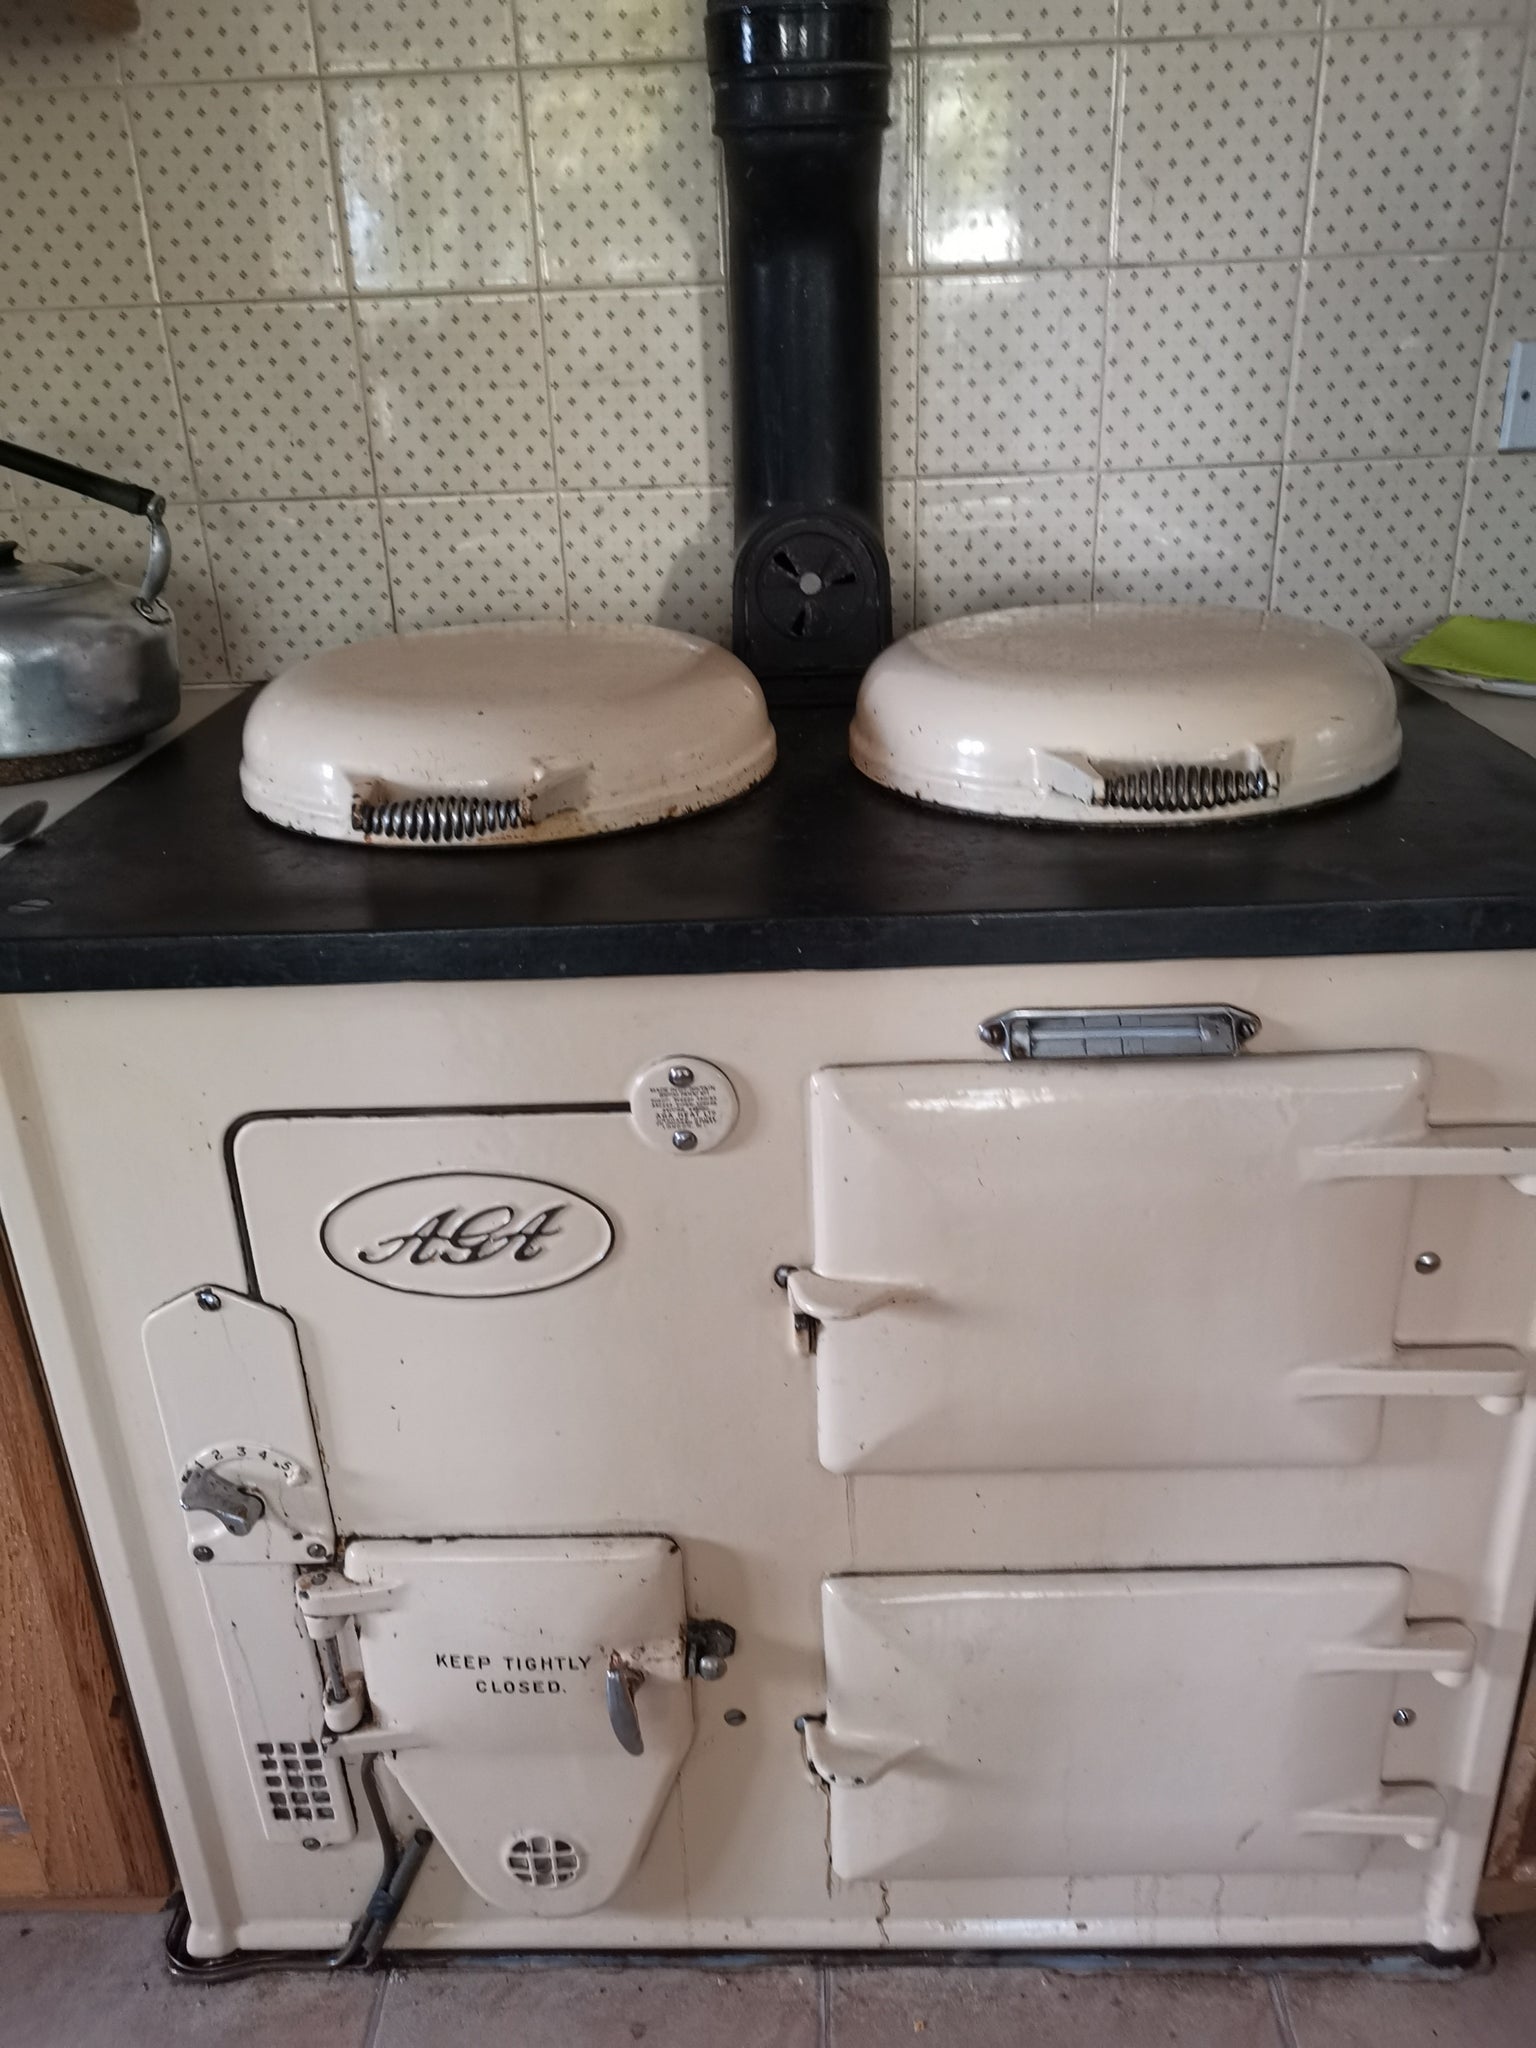 1932 Oldest Aga range cooker